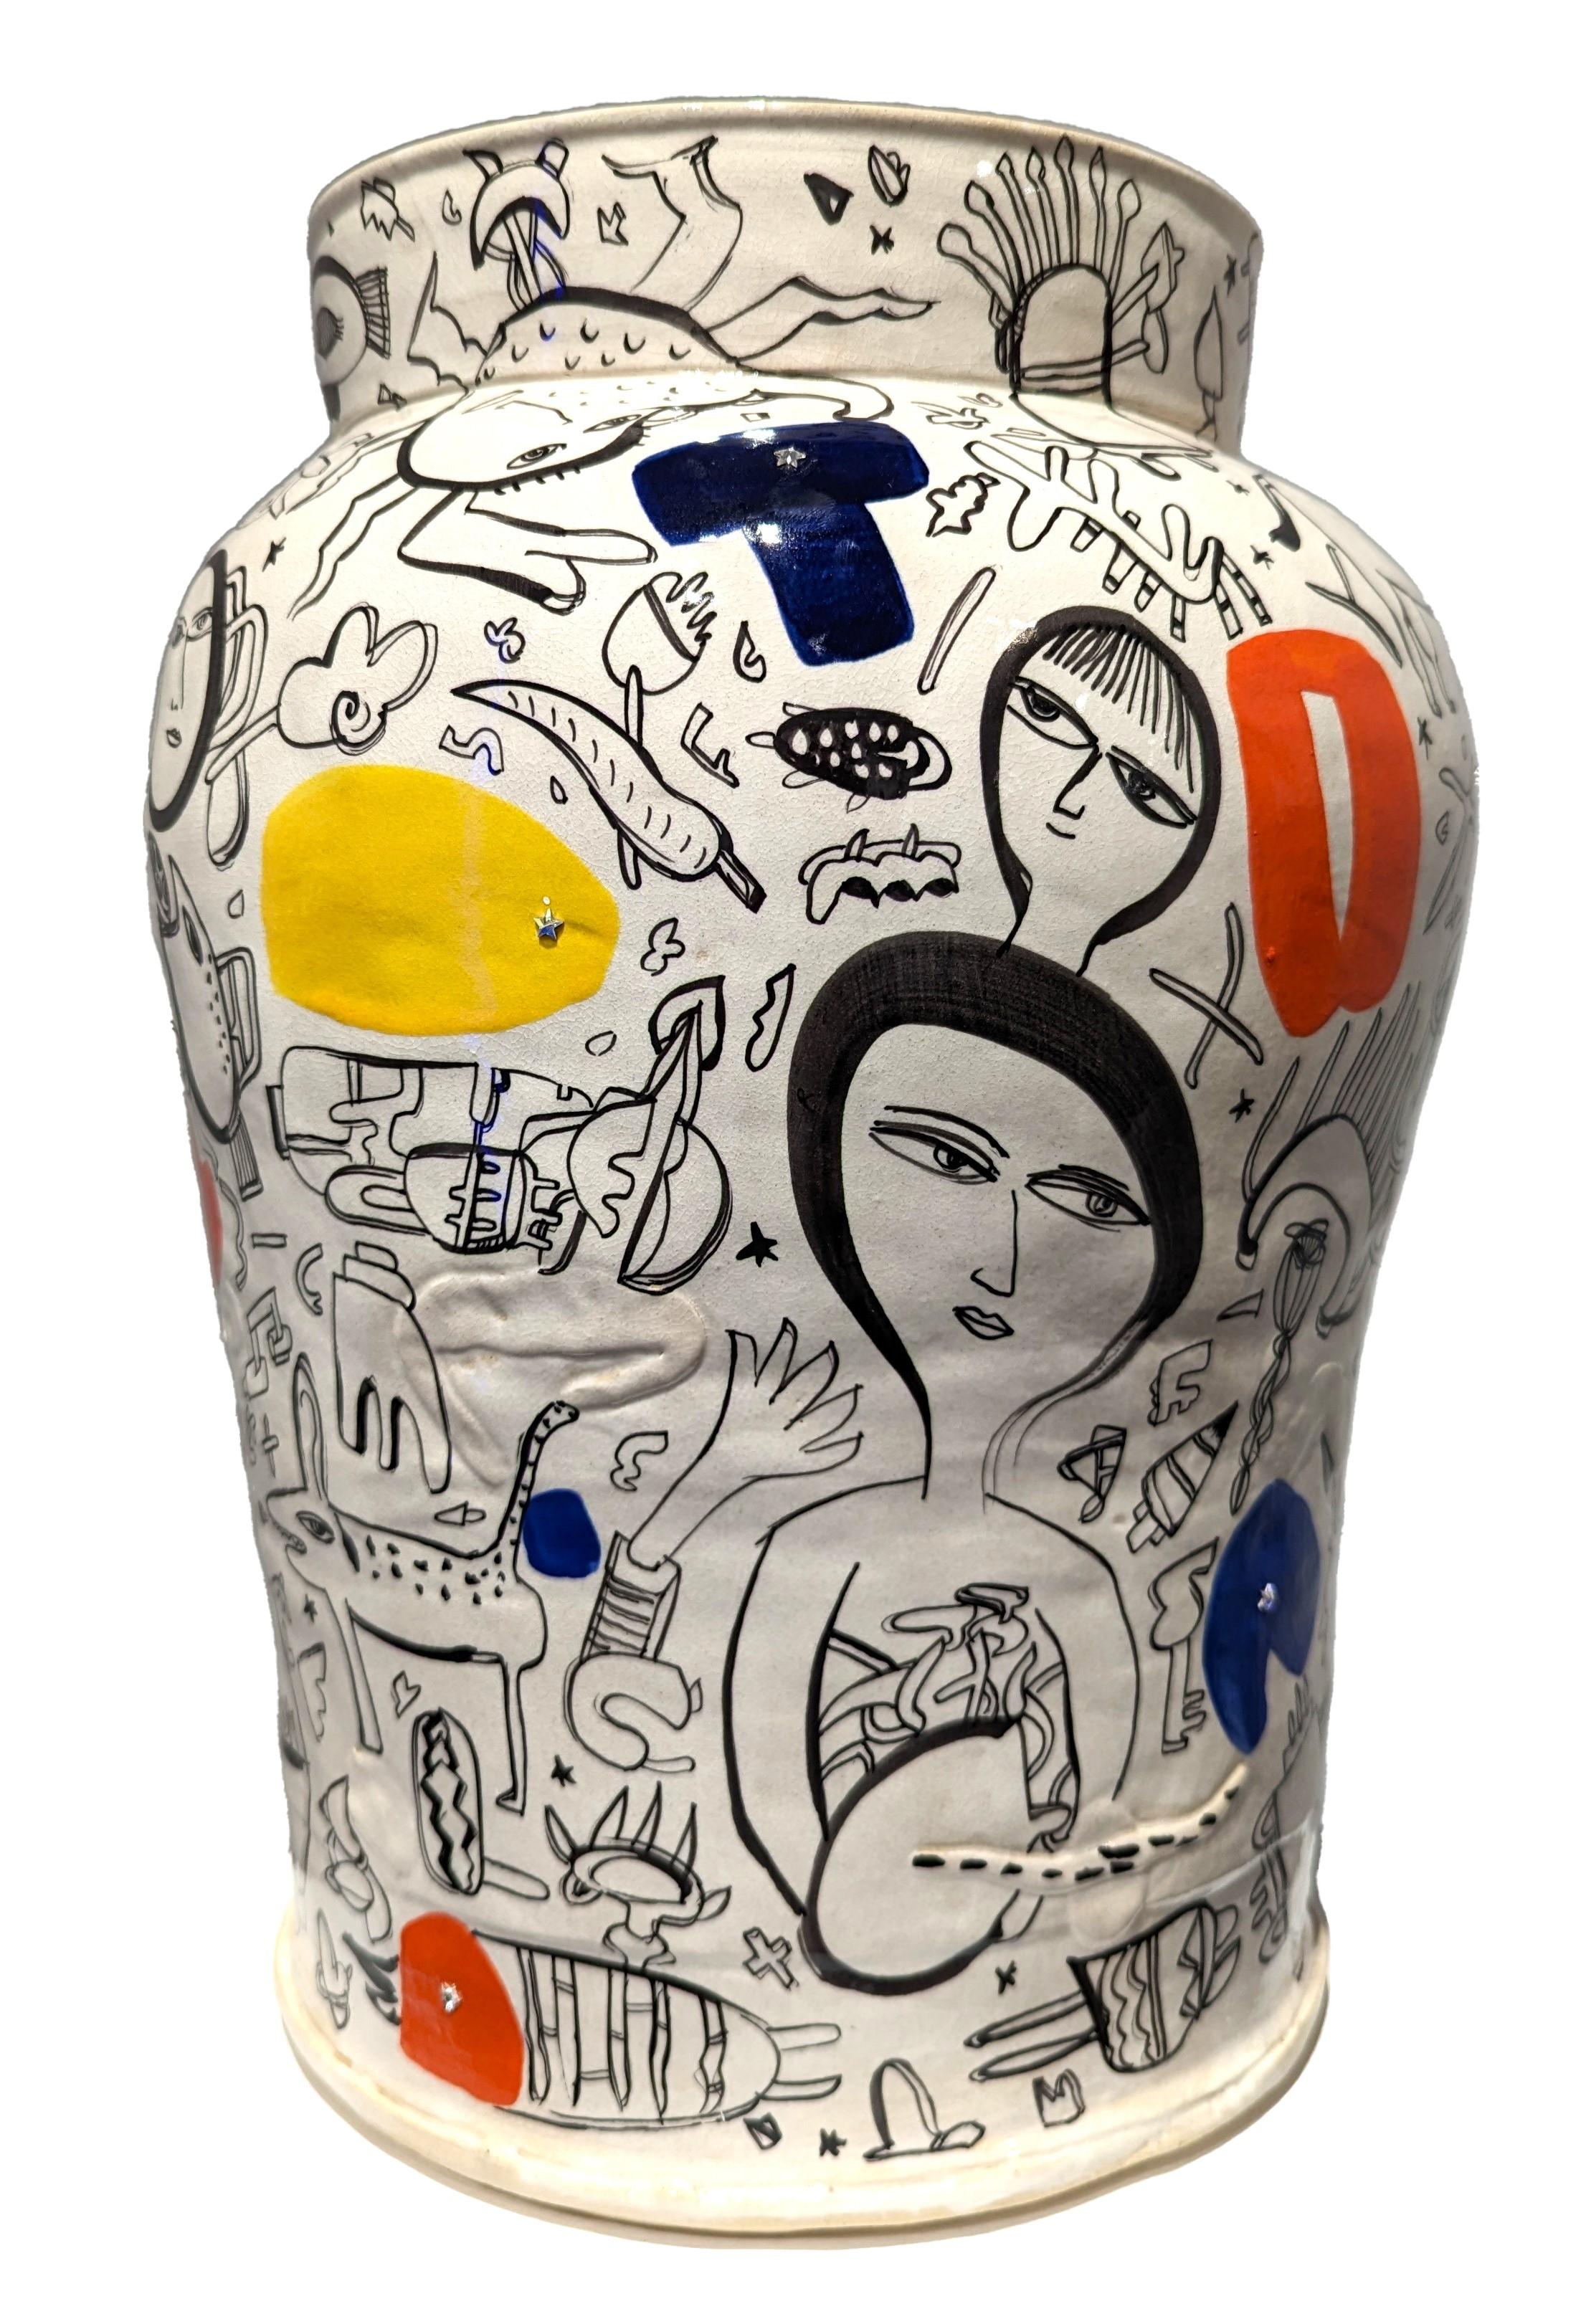 "Listening" White, Orange, Blue, & Yellow Stoneware Jar with Figurative Elements